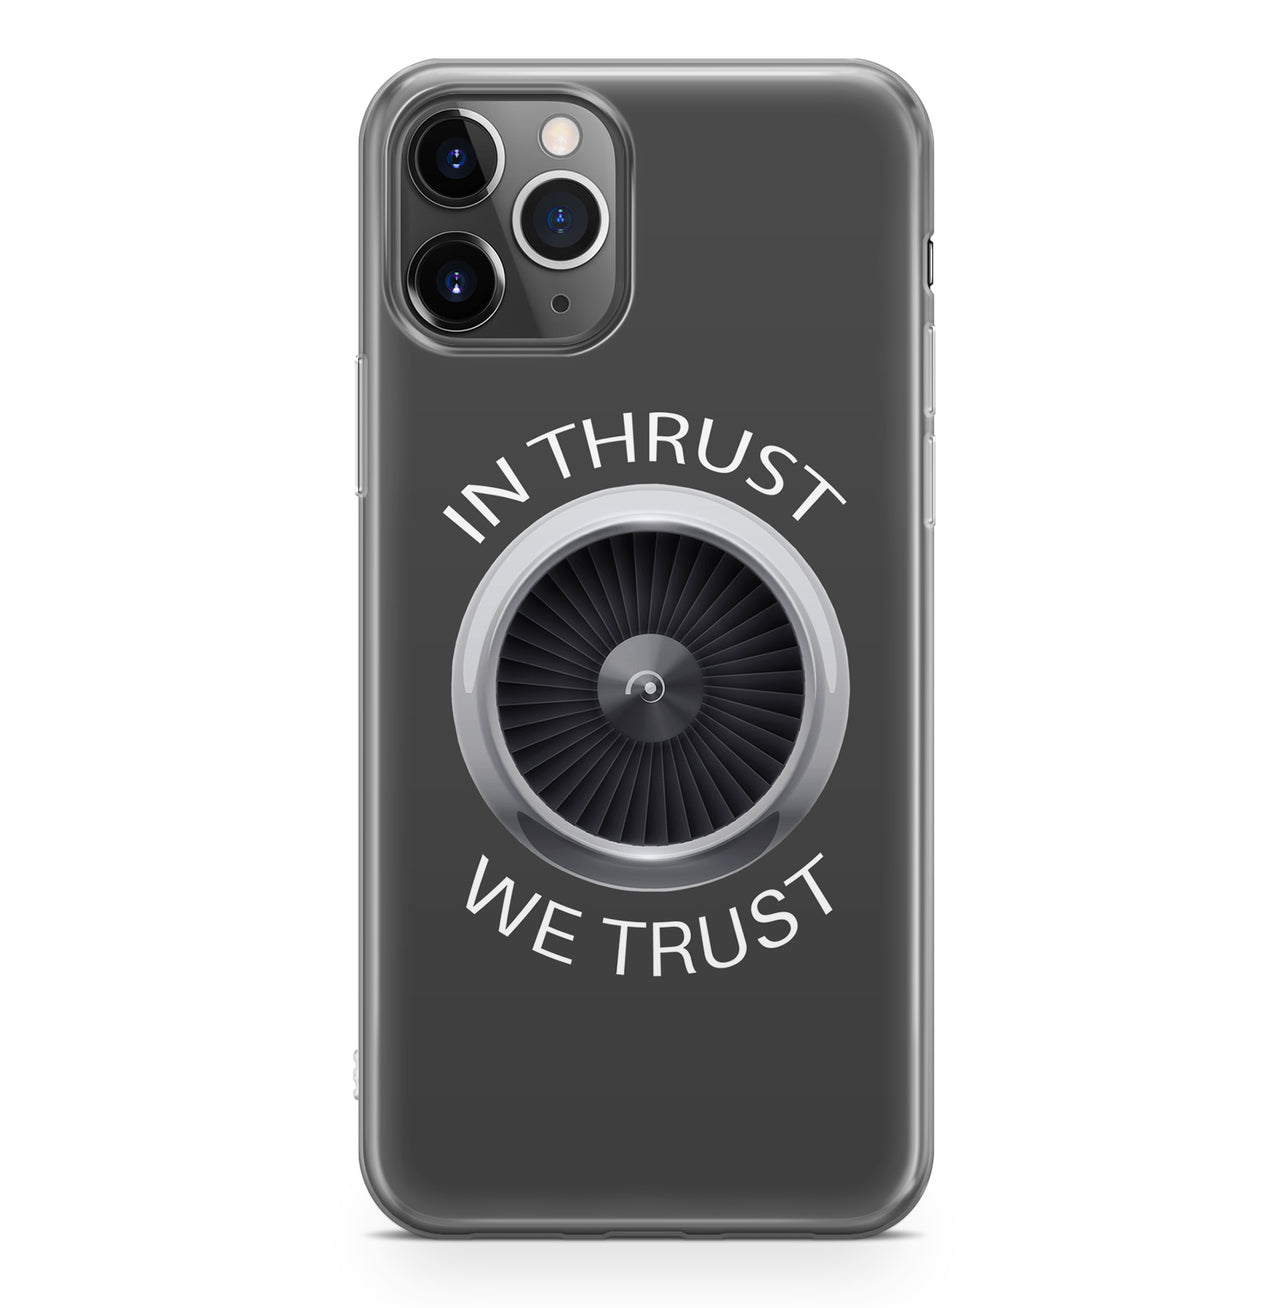 In Thrust We Trust Designed iPhone Cases